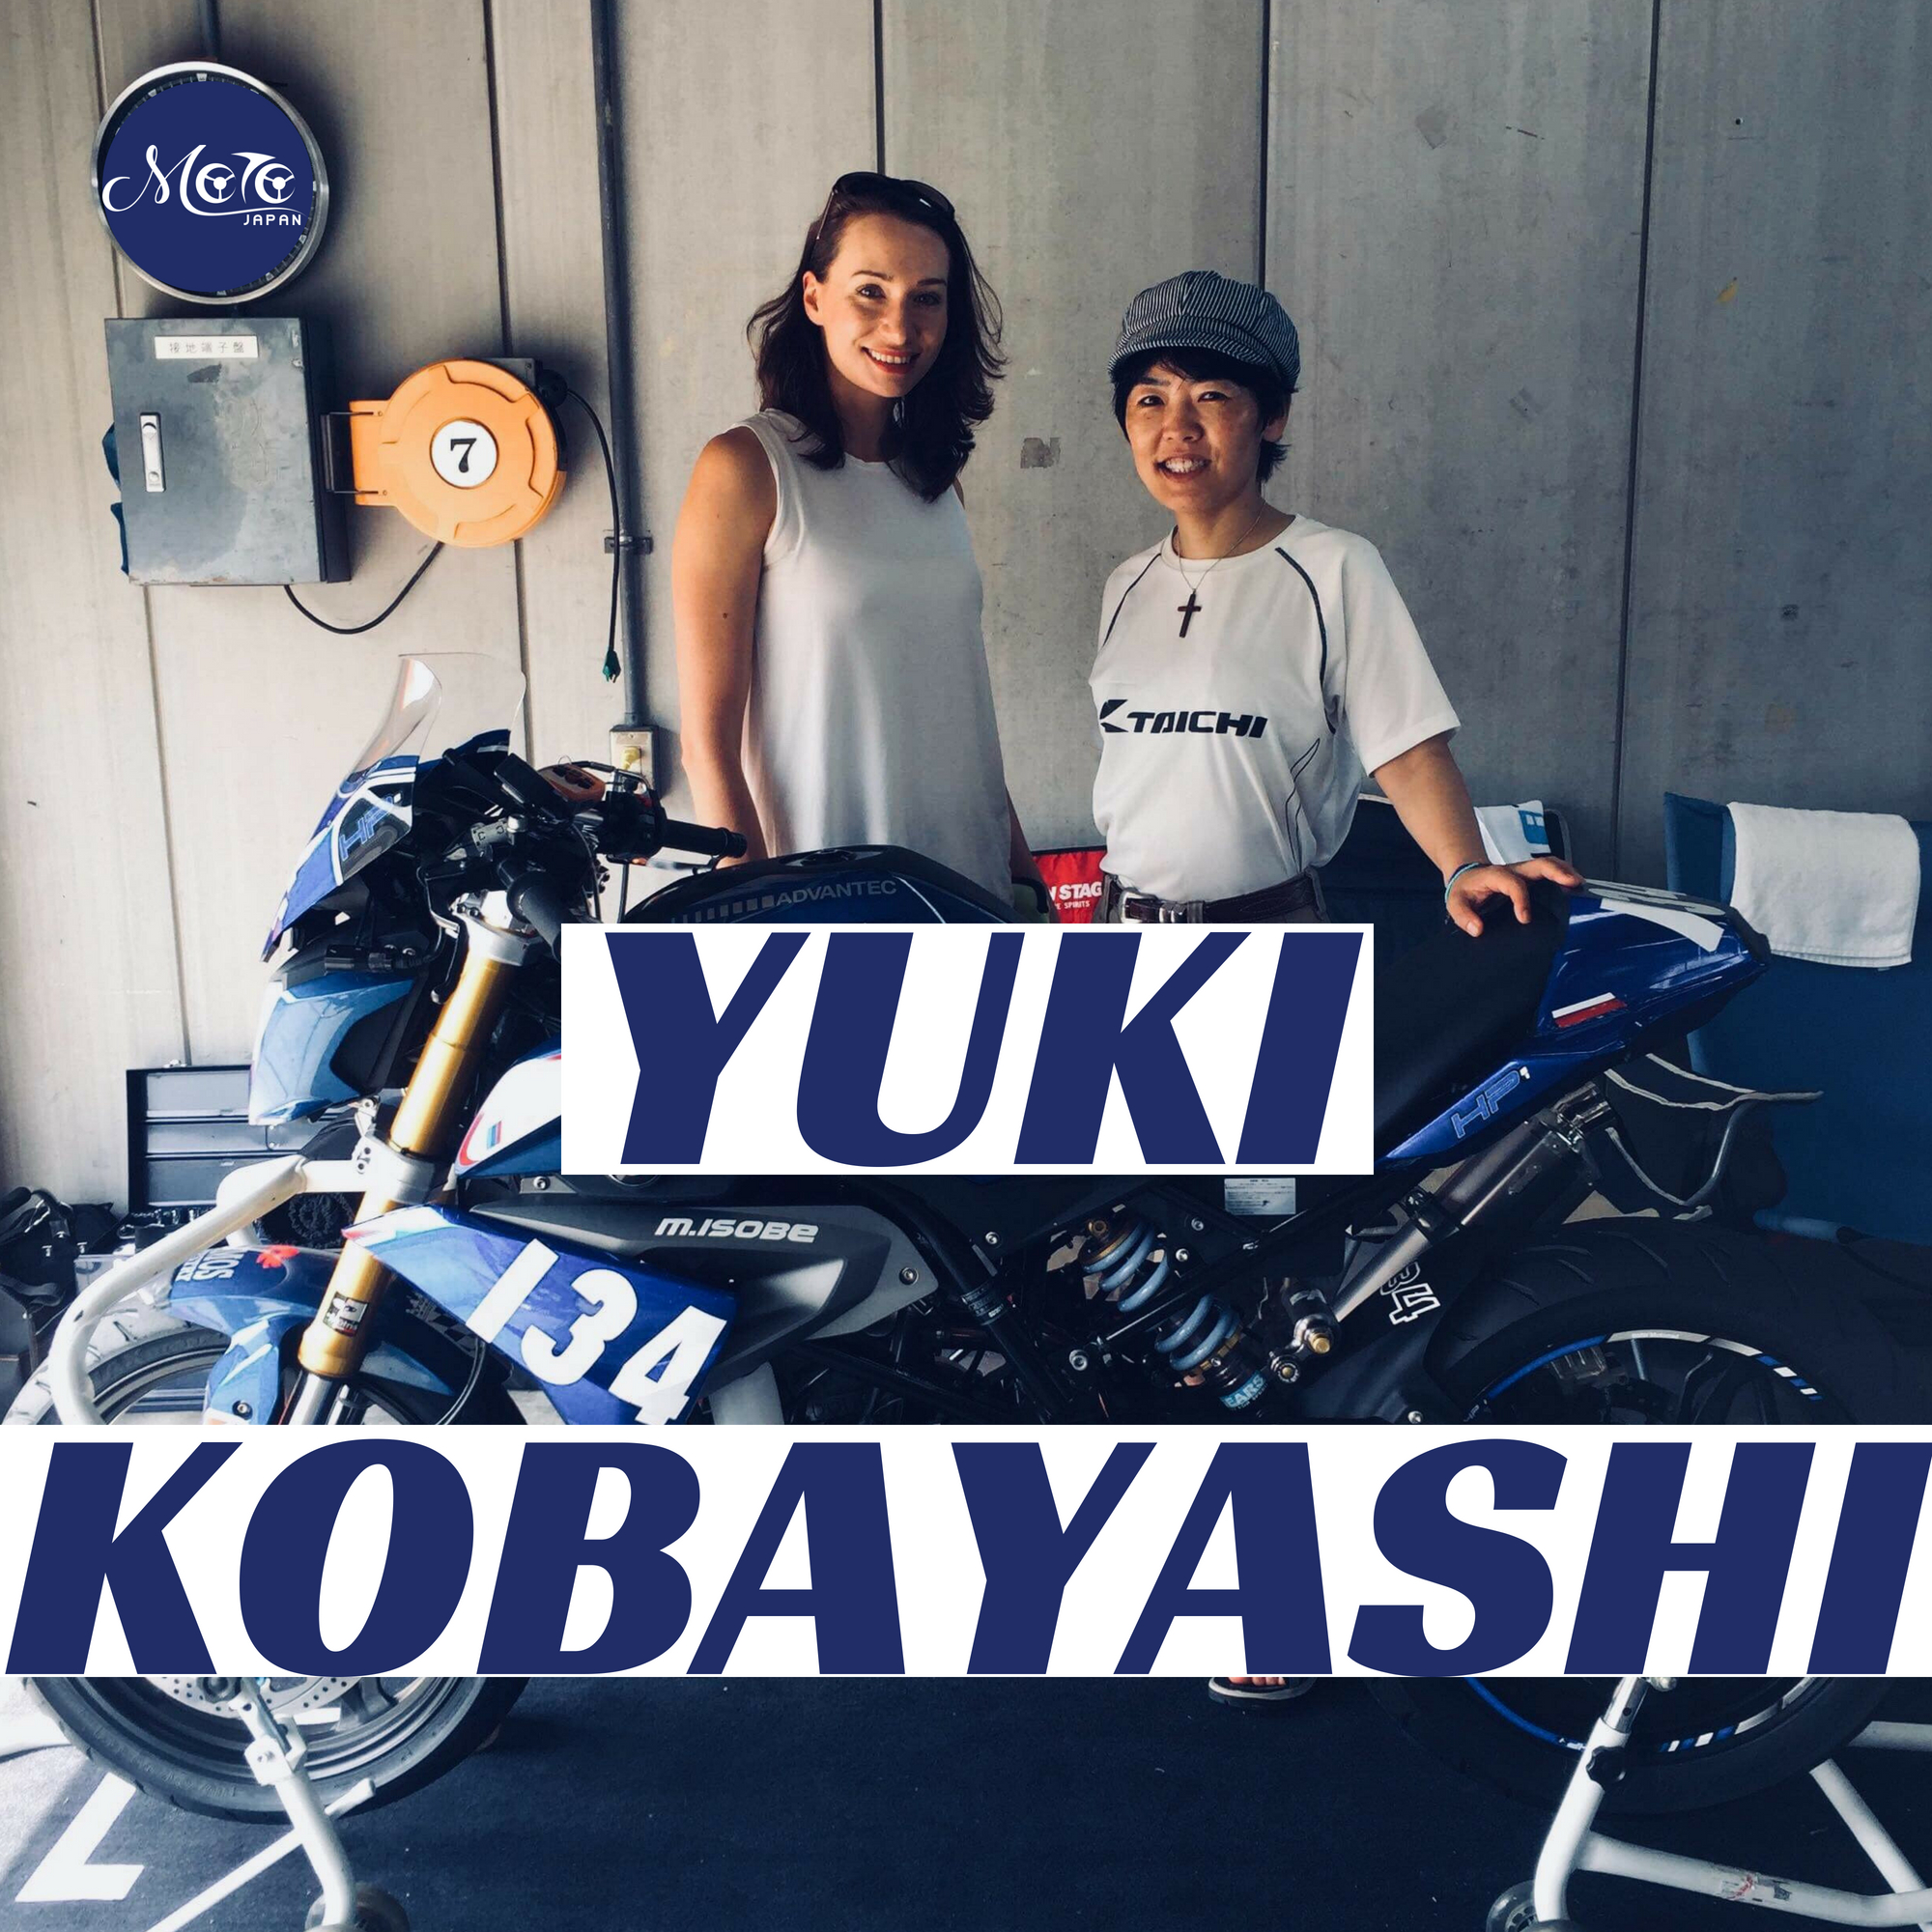 Yuki Kobayashi Motorcycle Journalist Racer